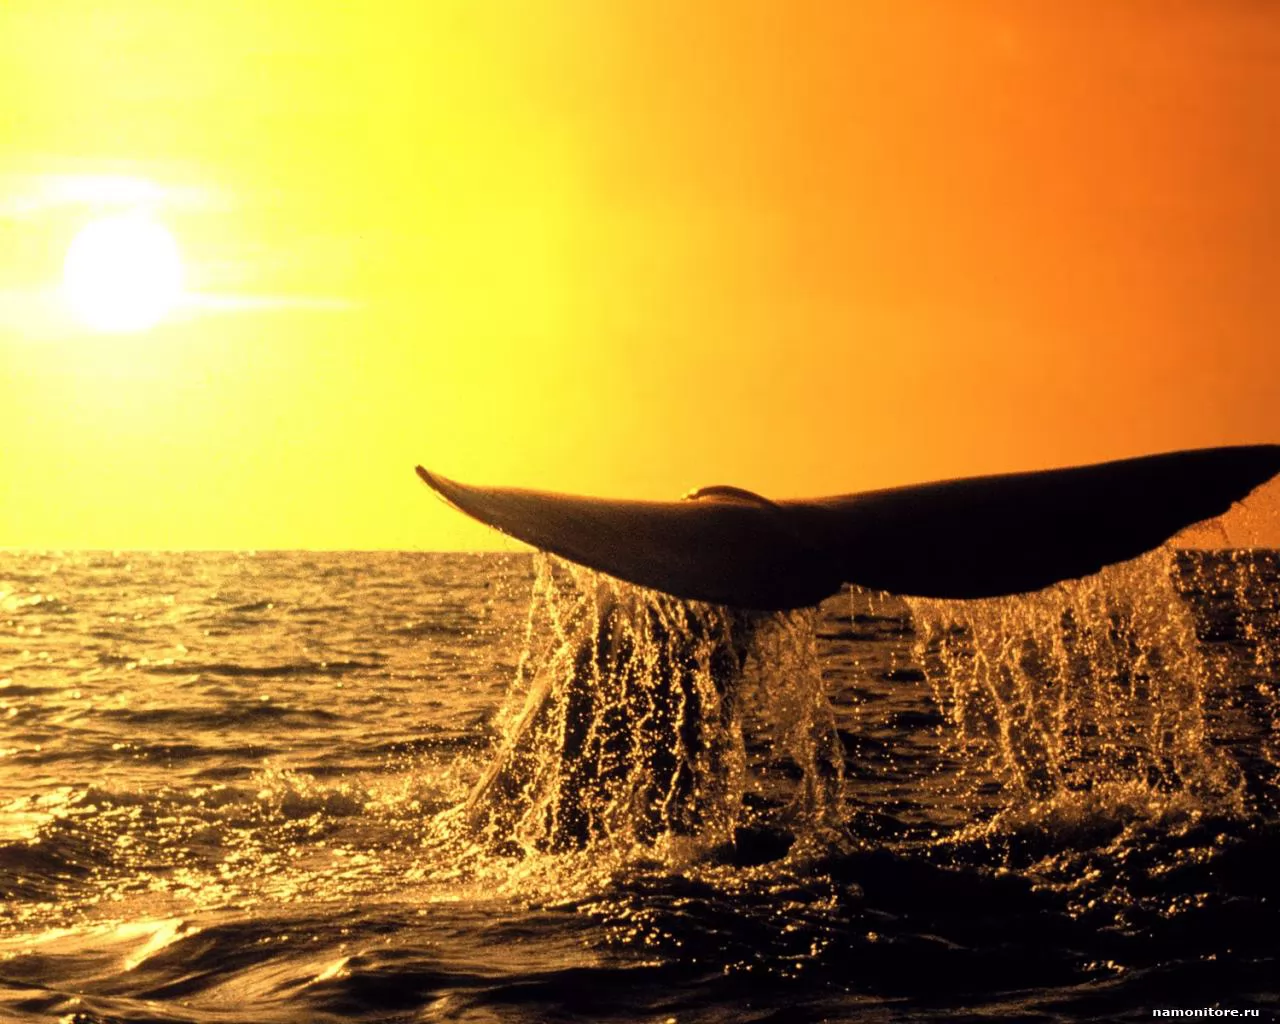 Хвост кита на фоне заката, закат, киты, море, оранжевое, солнце х